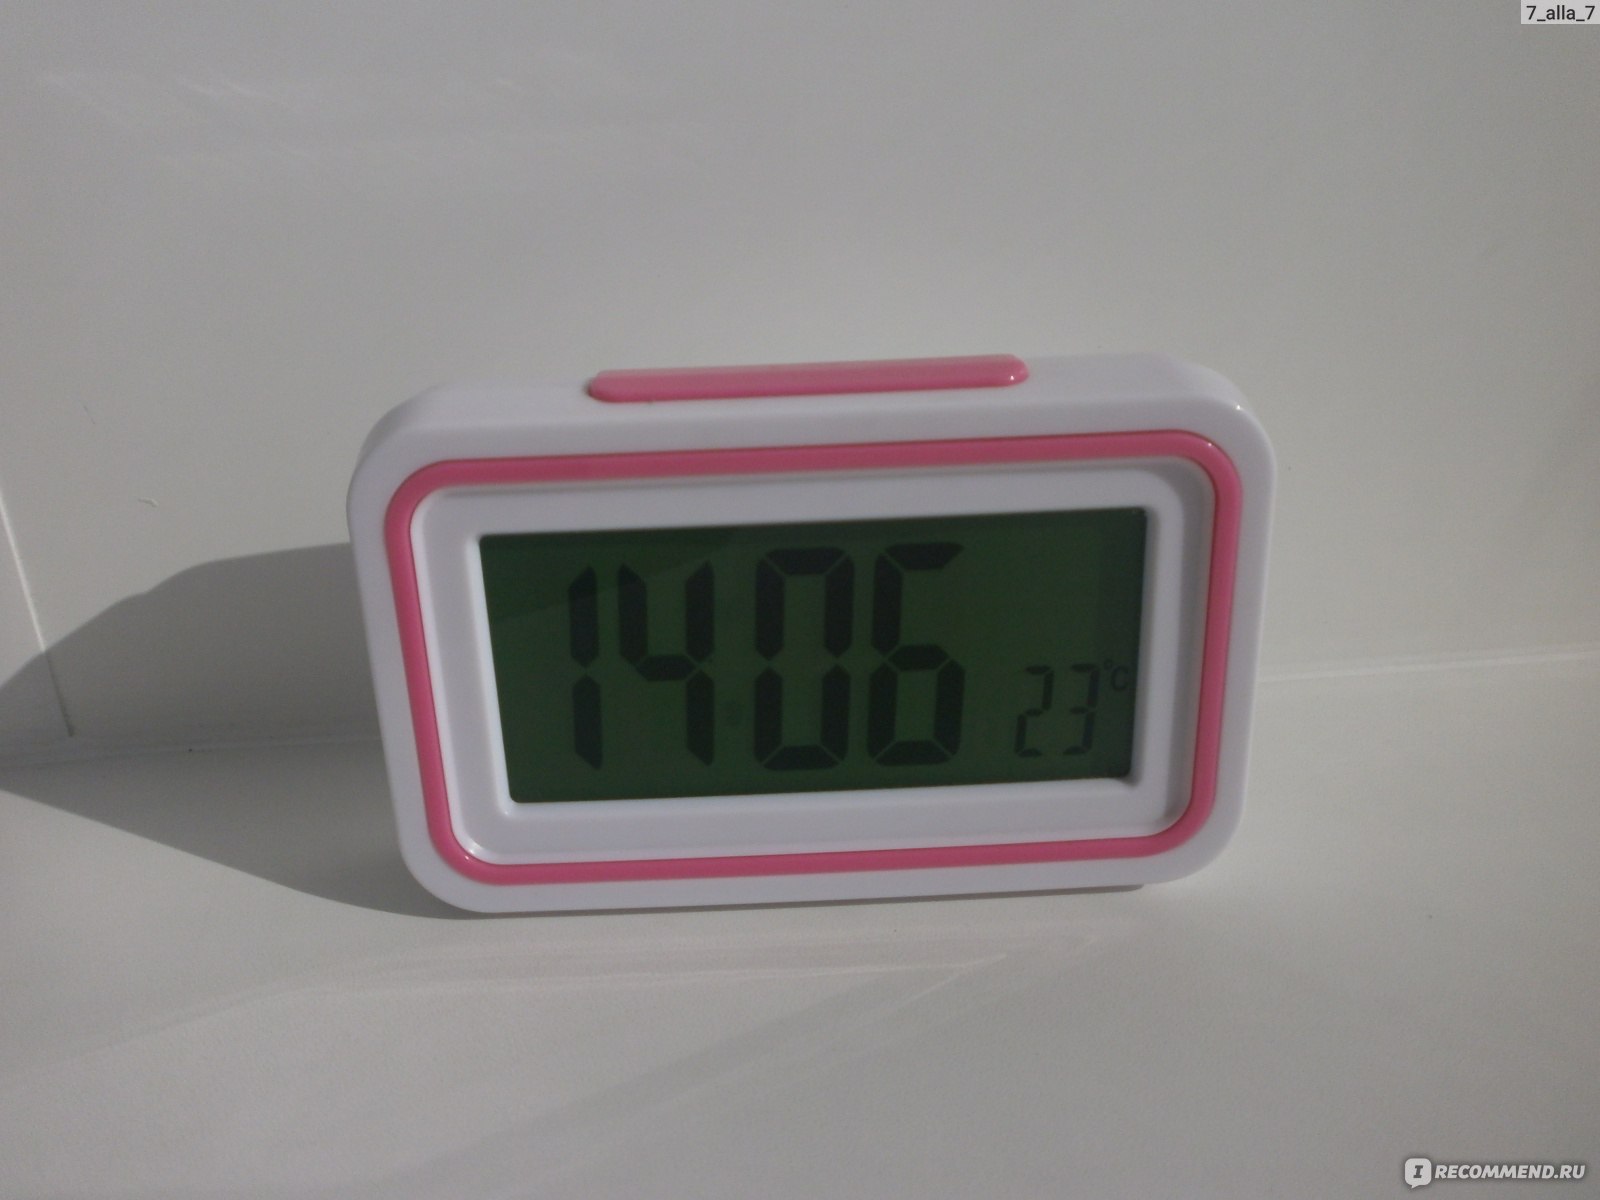 Говорящие часы-будильник для взрослых, говорящие часы с испанской раскладкой, ручные часы-будильник